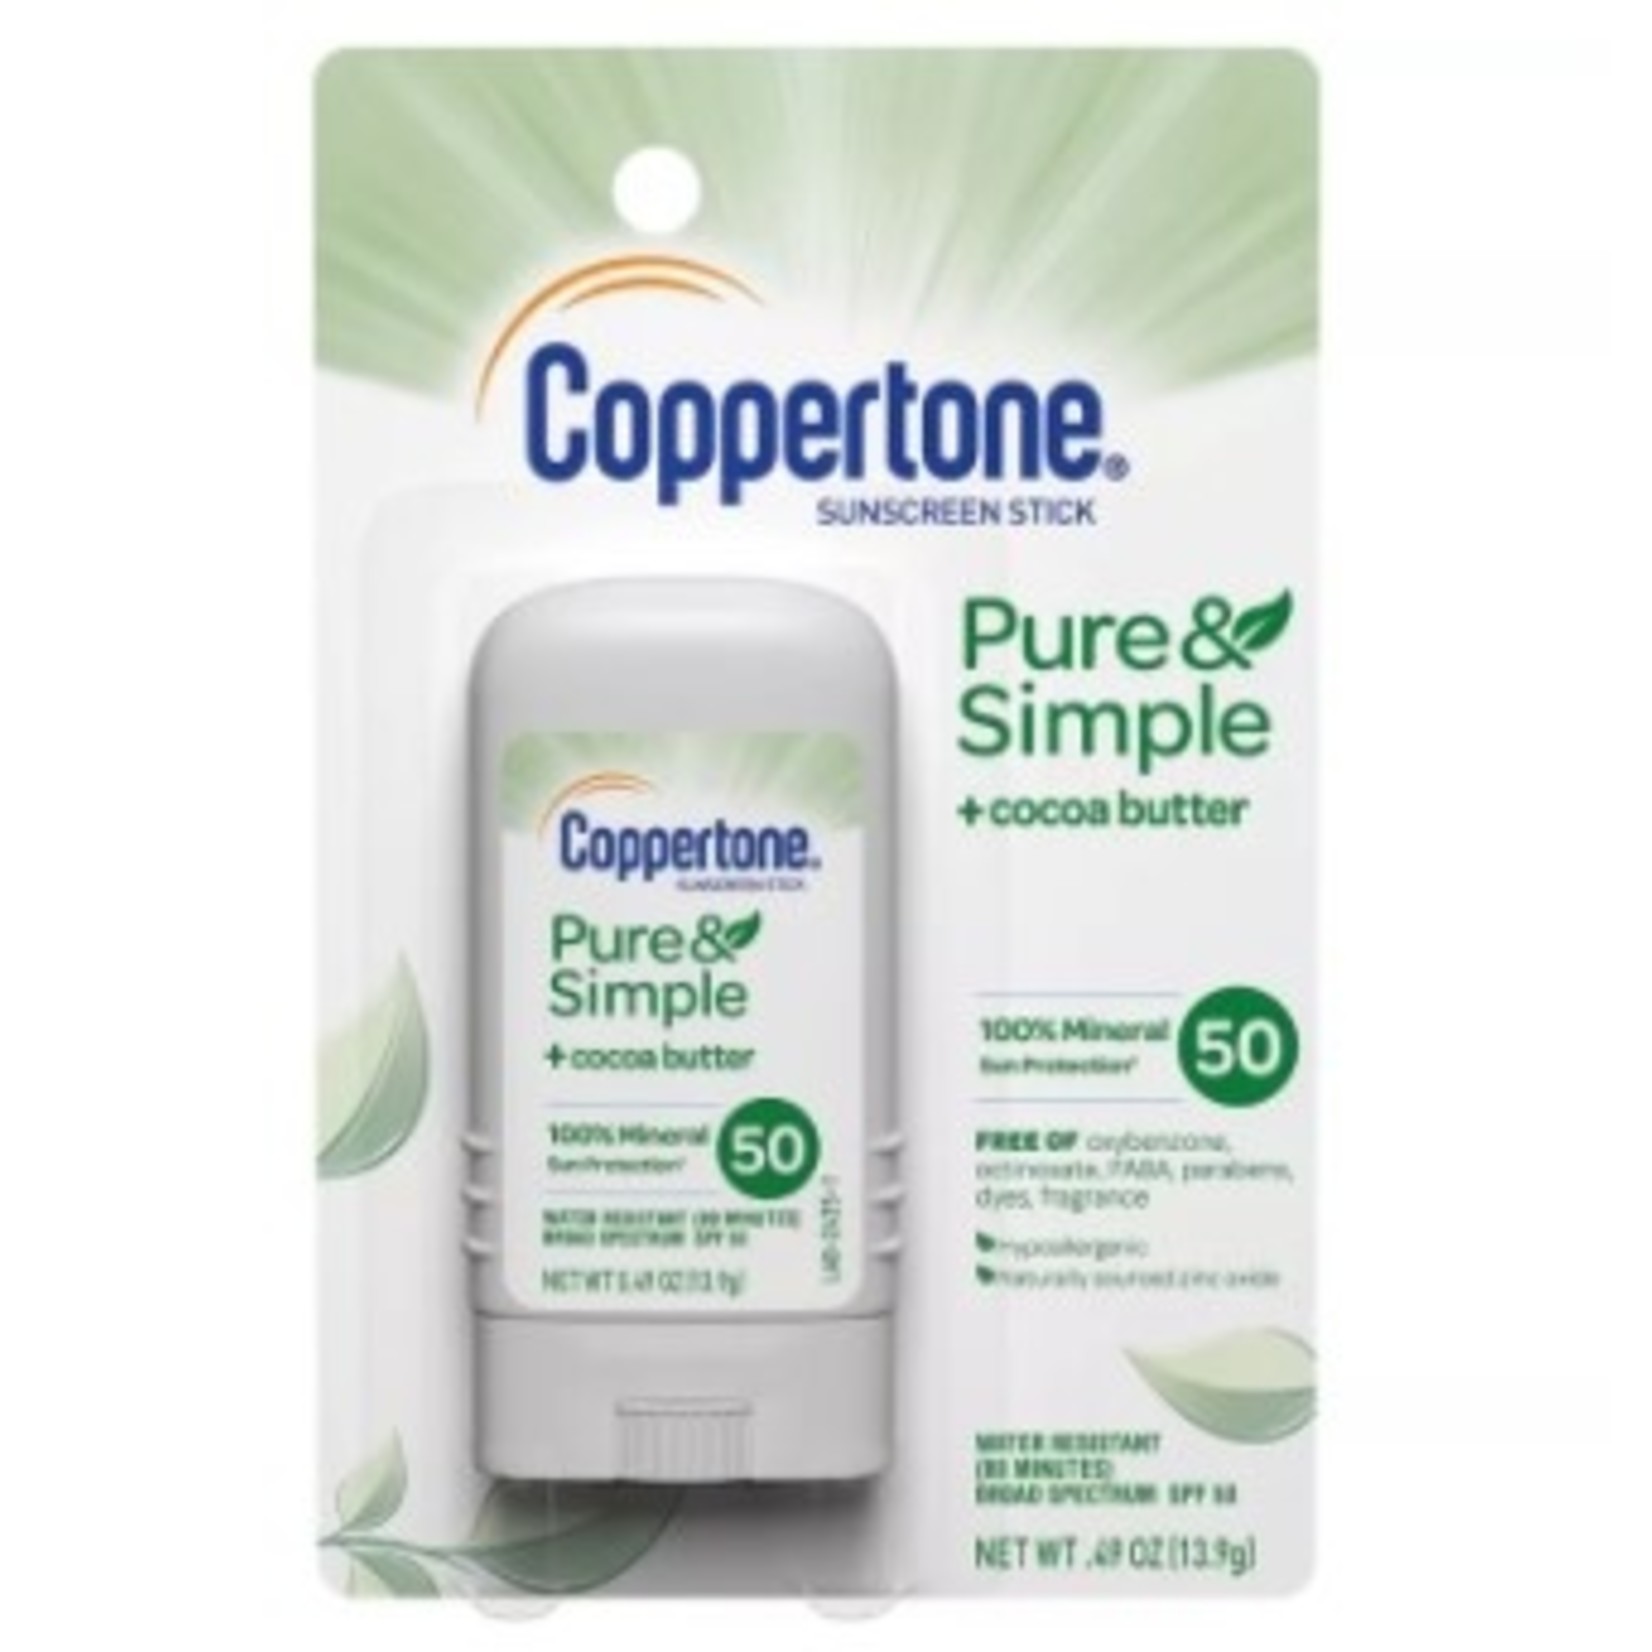 Coppertone Sunscreen Stick + Cocoa Butter 50 SPF .49 OZ